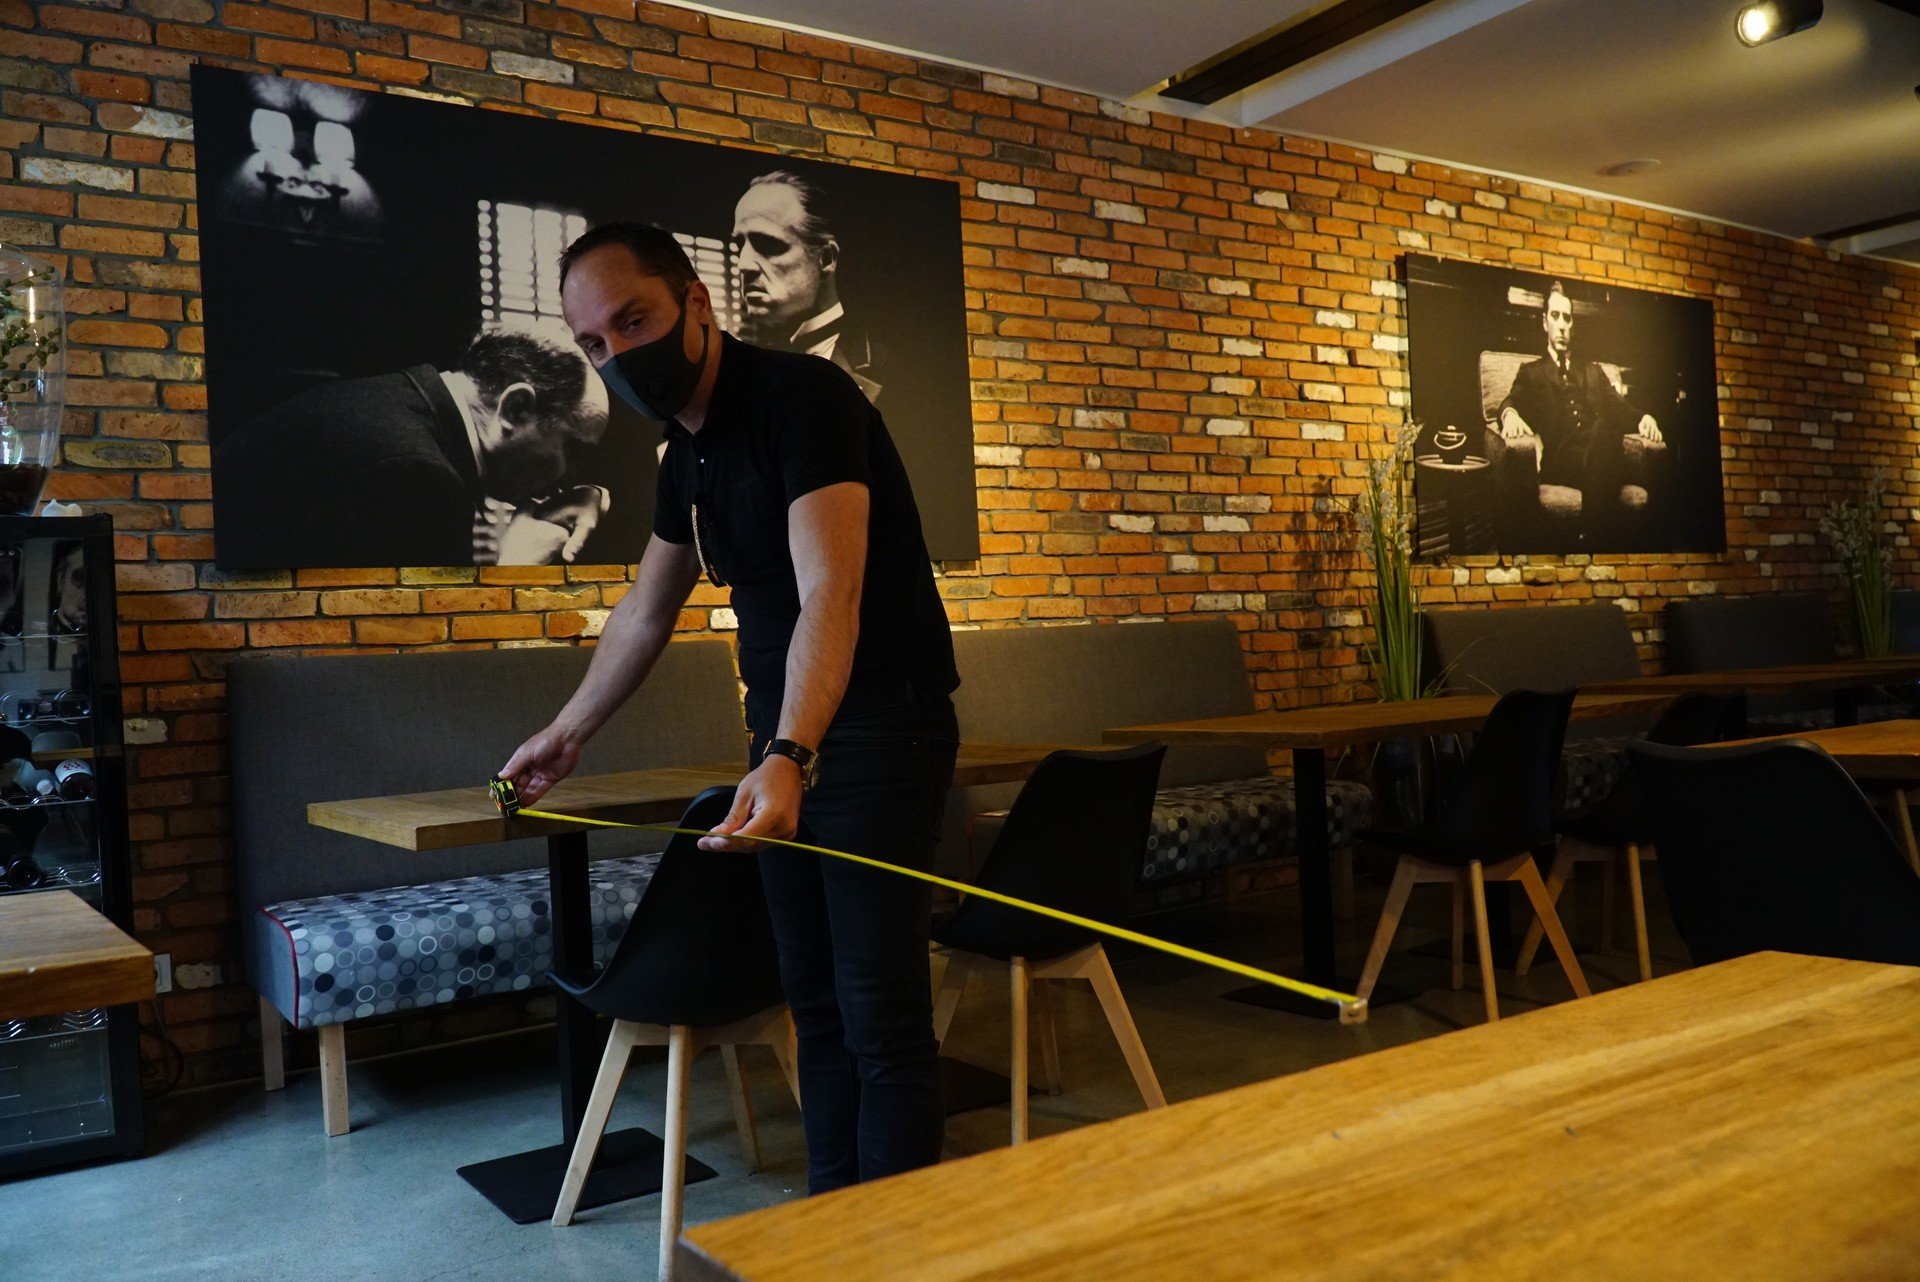 Restauracje, bary i kawiarnie w Poznaniu szykują się na otwarcie 18 maja.  Sprawdziliśmy, jak wyglądają przygotowania | Głos Wielkopolski